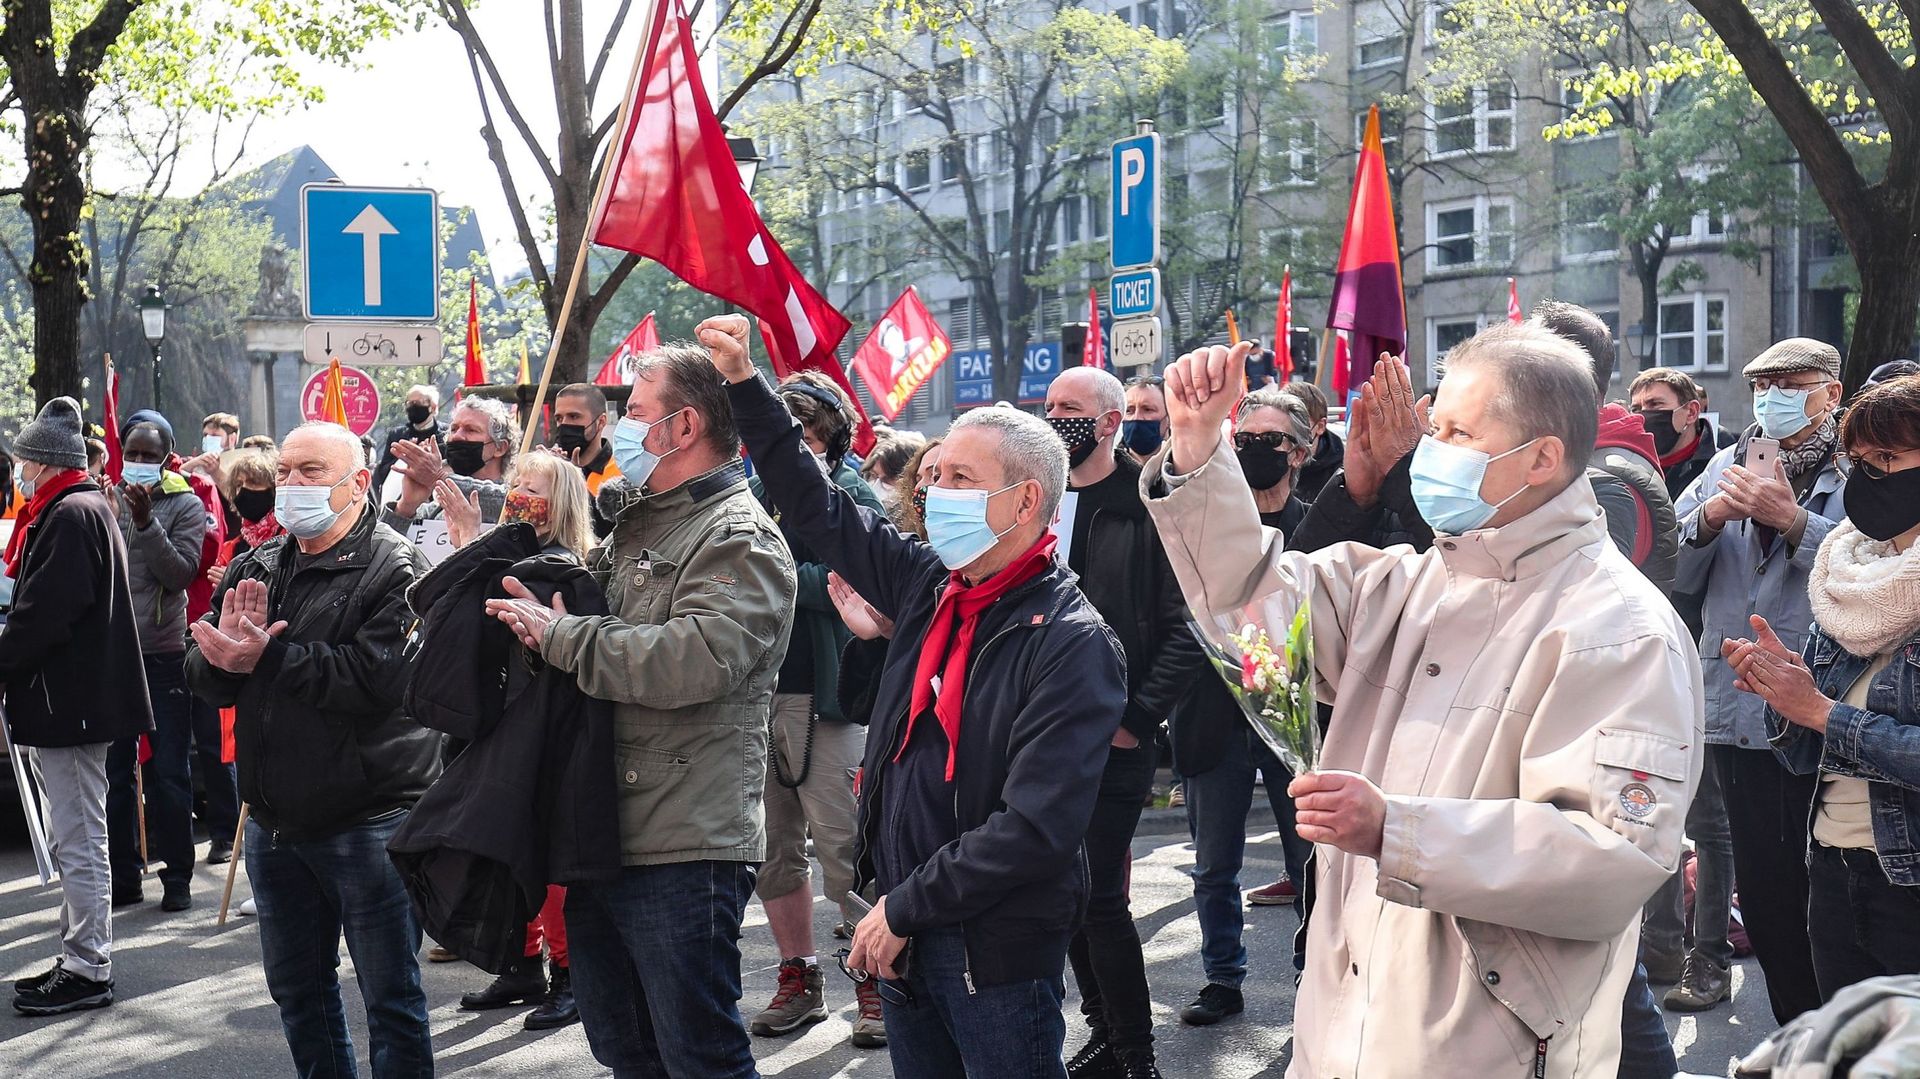 Manifestations à Liège : une centaine de personnes sur la place Saint-Lambert malgré l’interdiction du bourgmestre